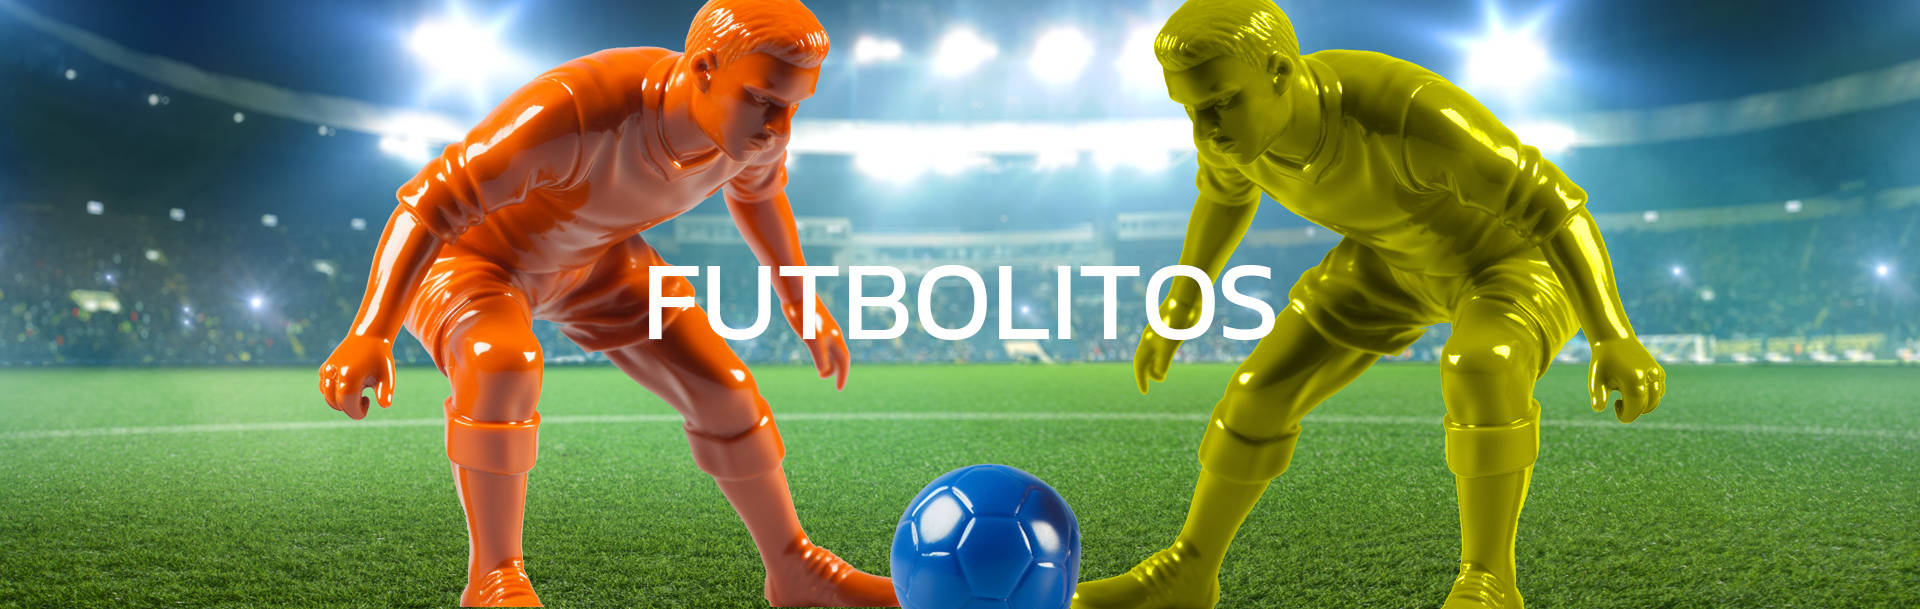 section-futbolitos-bg